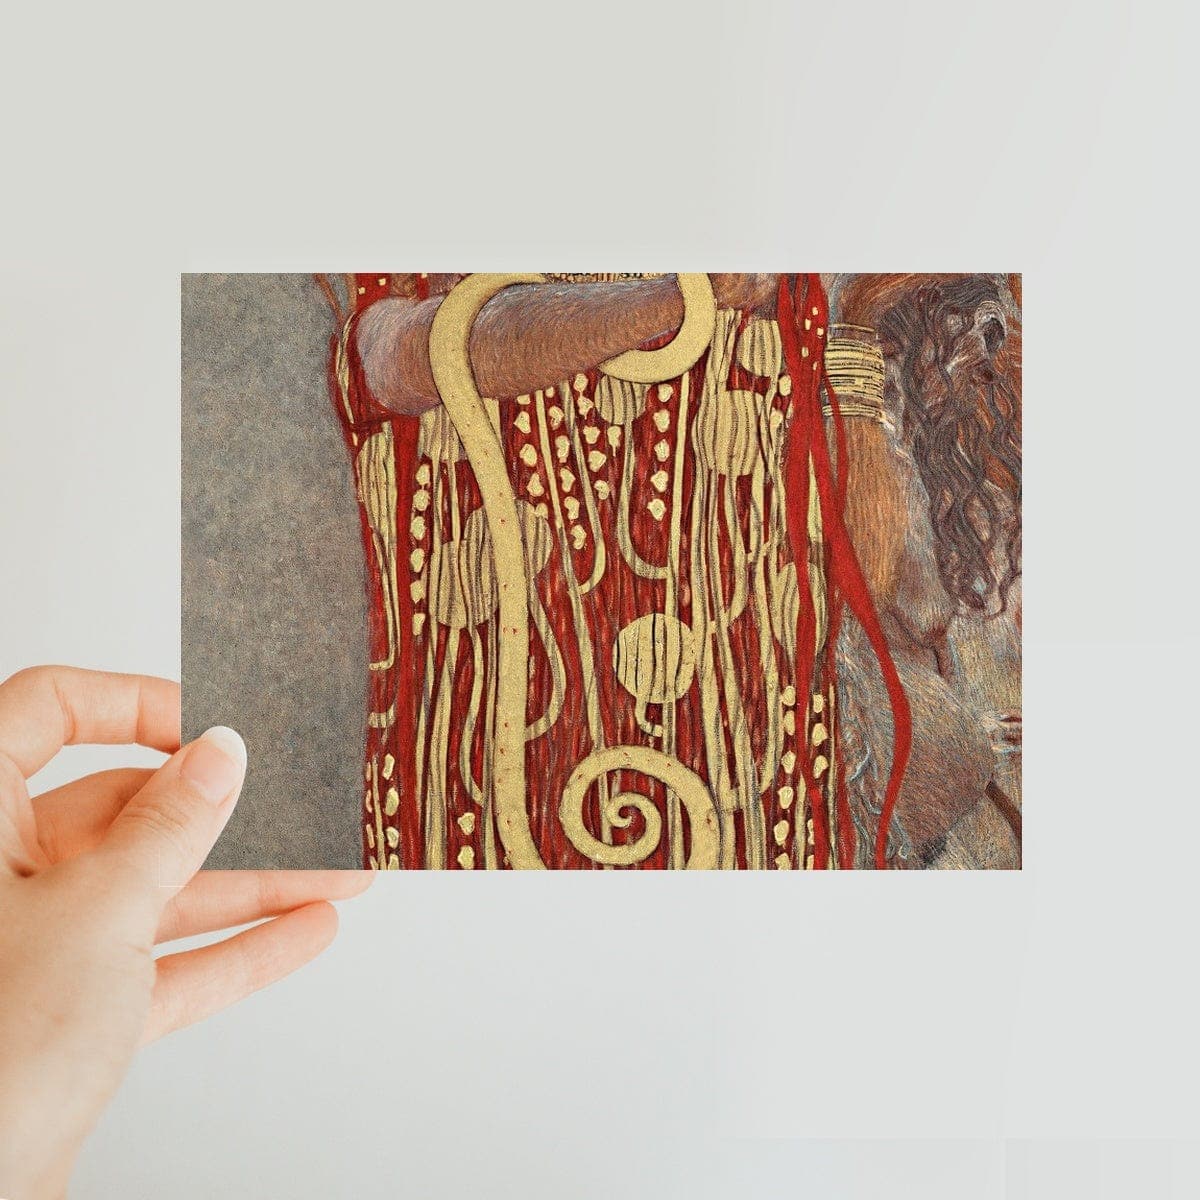 Gustav Klimt's Hygieia (1907) Classic Postcard